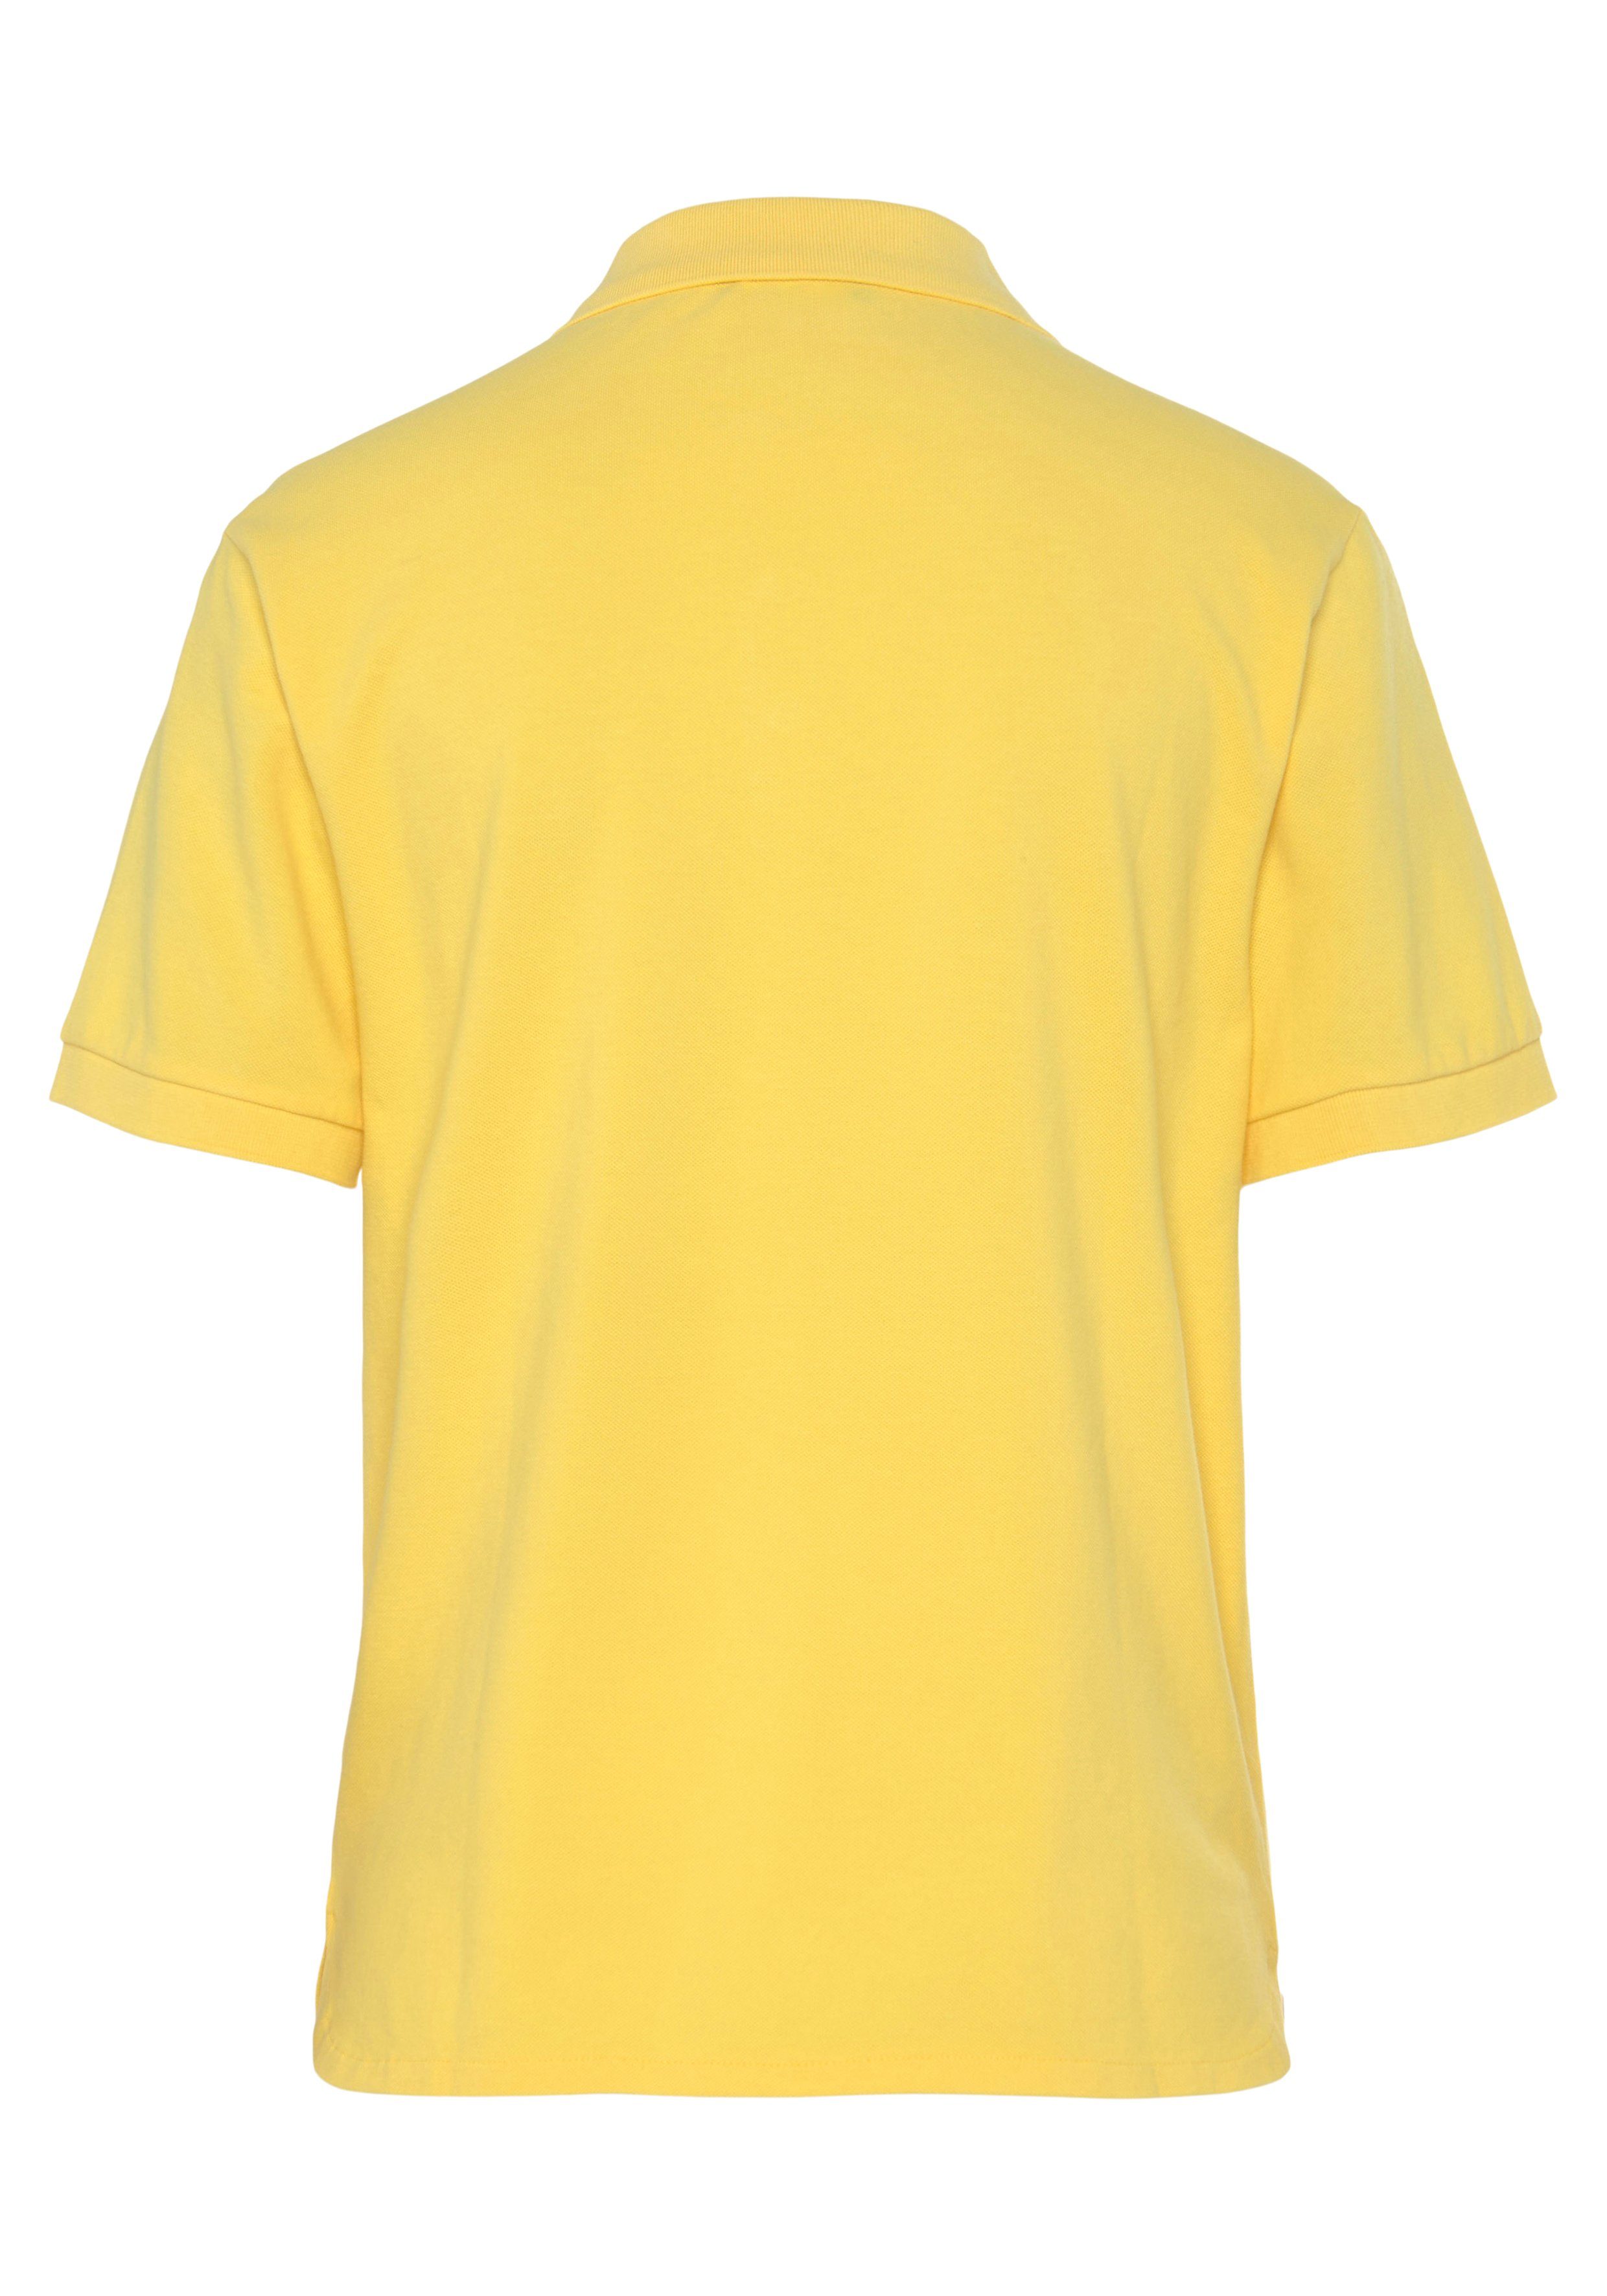 United Colors of Benetton mit gelb Knöpfen Poloshirt perlmuttfarbenen